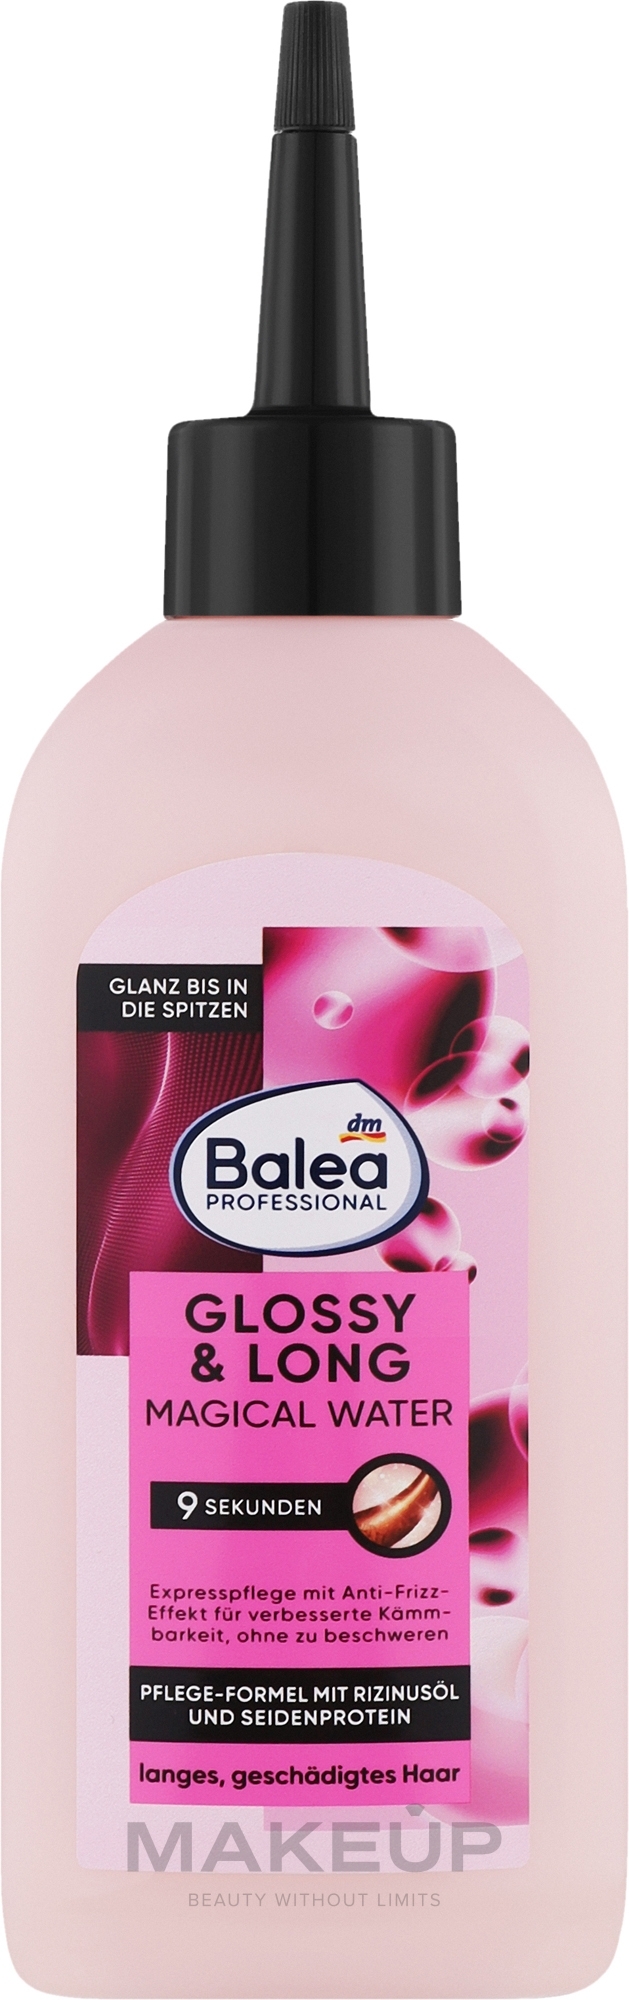 Профессиональная сыворотка для длинных волос - Balea Professional Glossy & Long Magical Water — фото 200ml